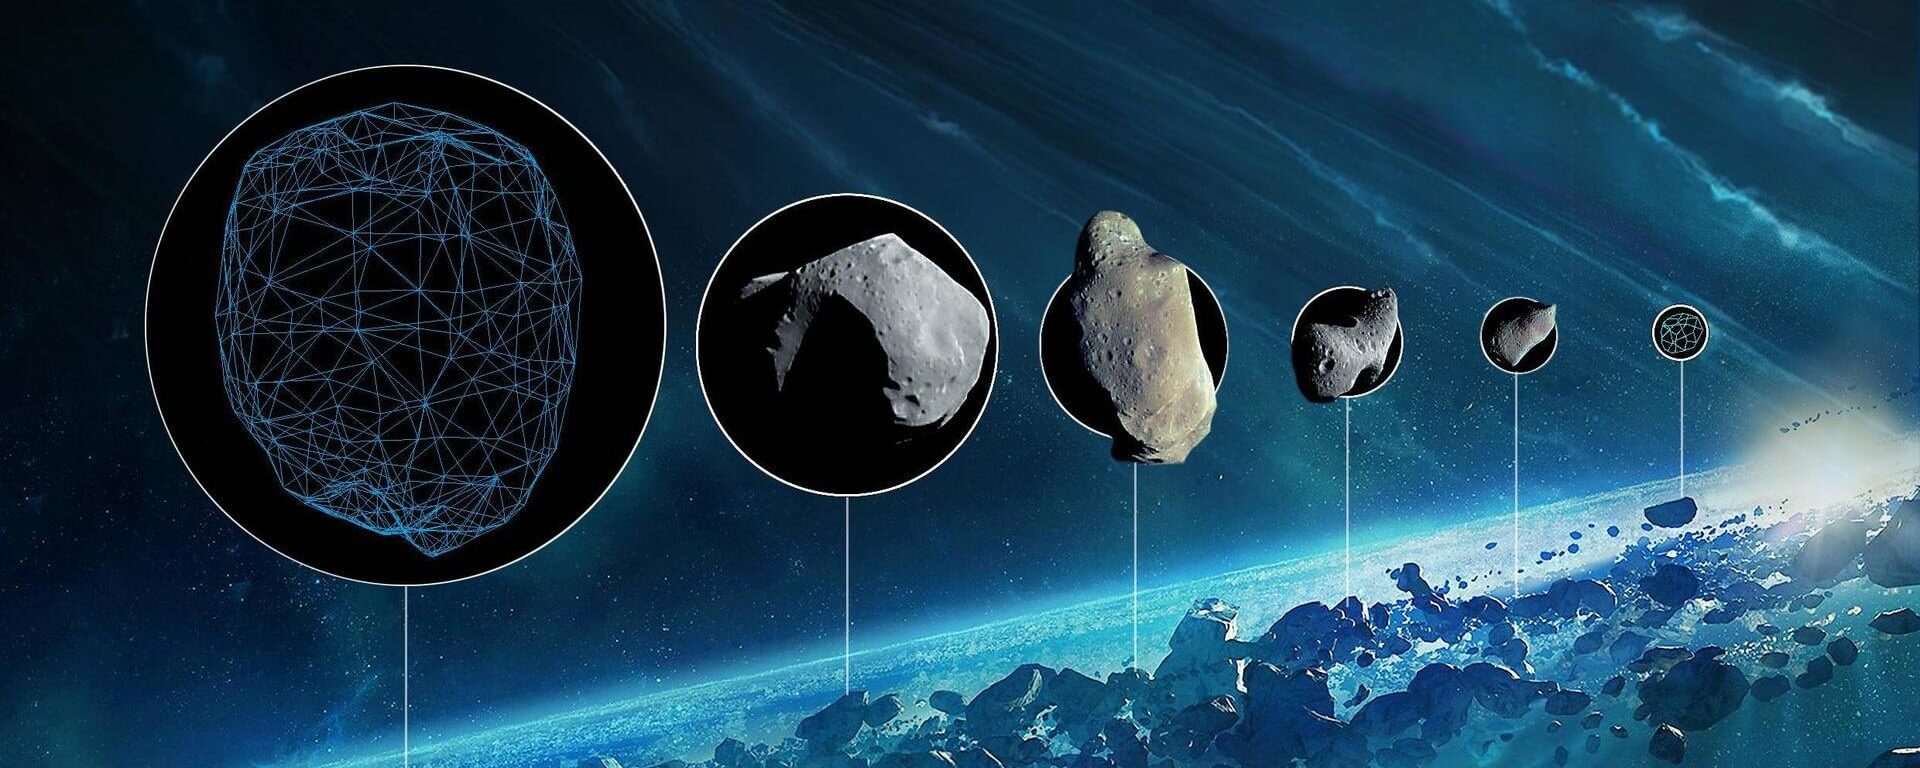 Эксперимент с пушкой доказал, что астероиды могли занести воду на Землю. Фото.